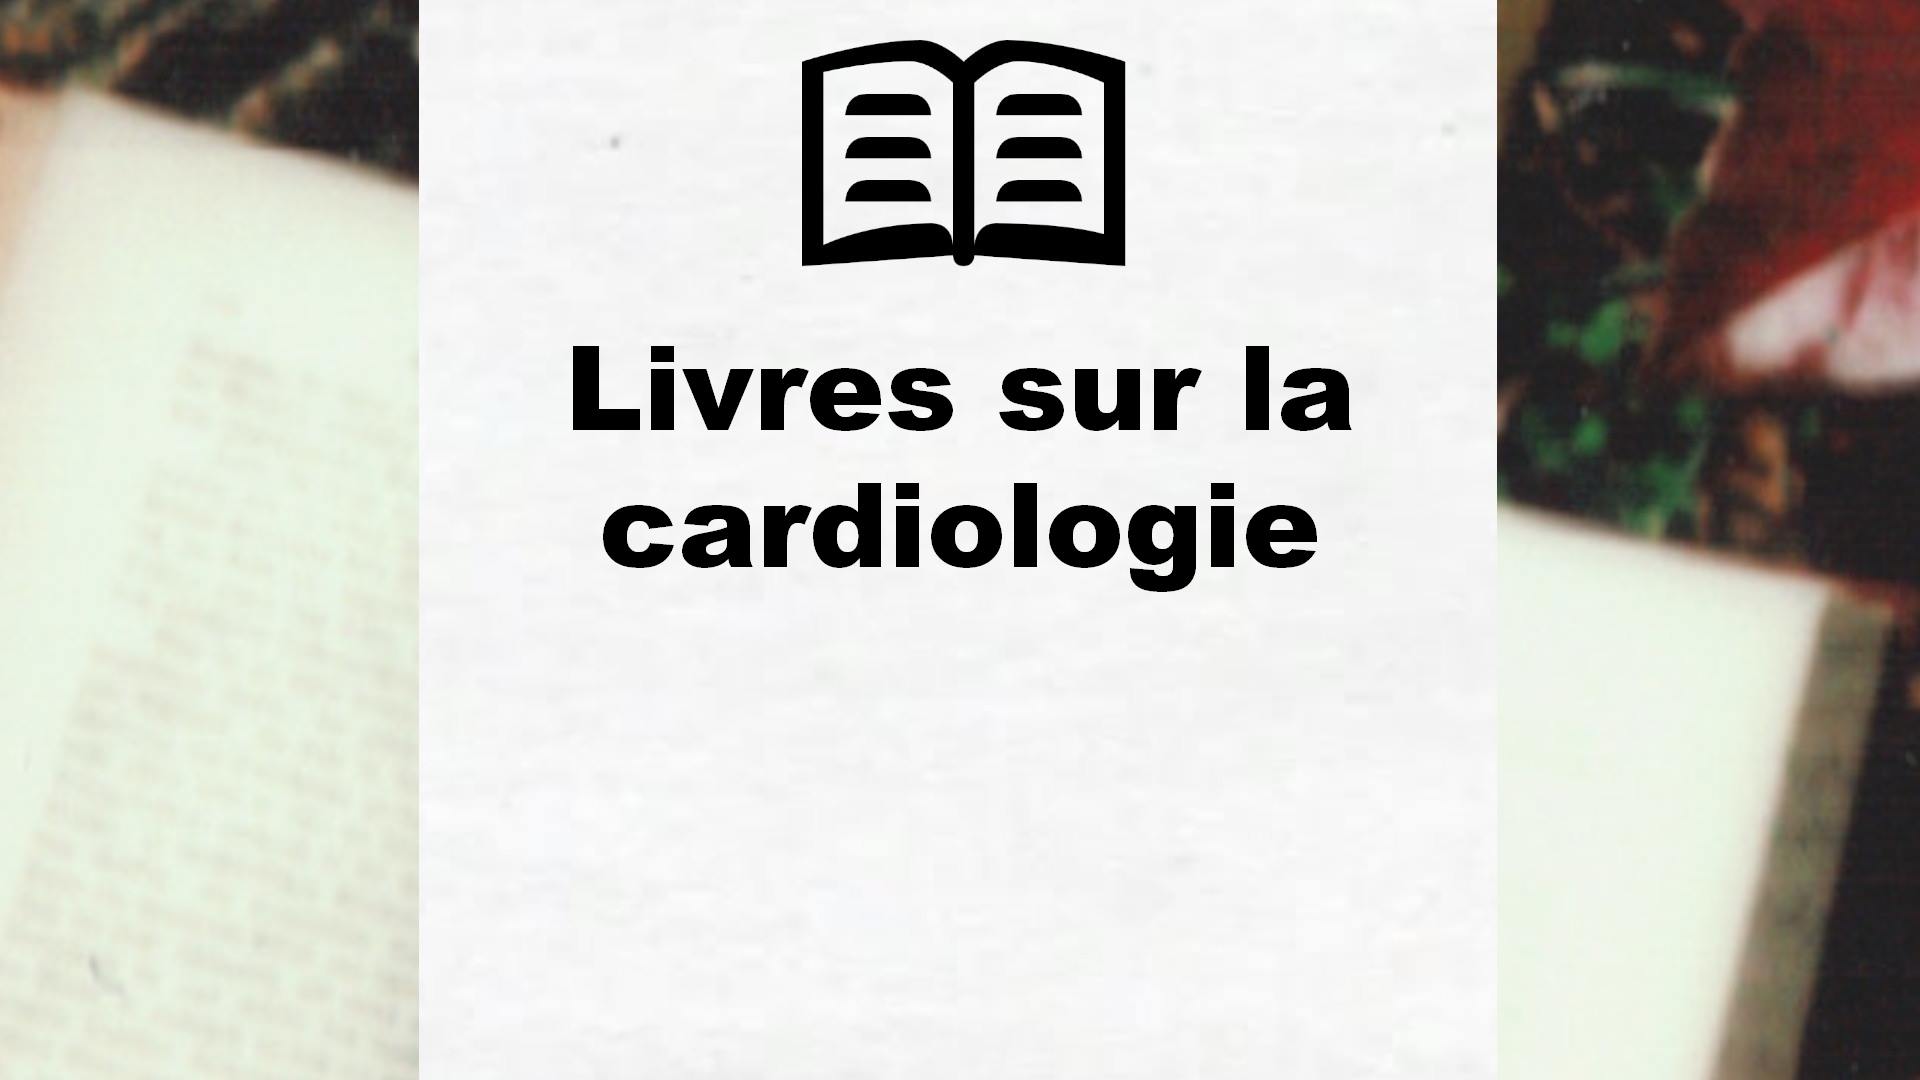 Livres sur la cardiologie